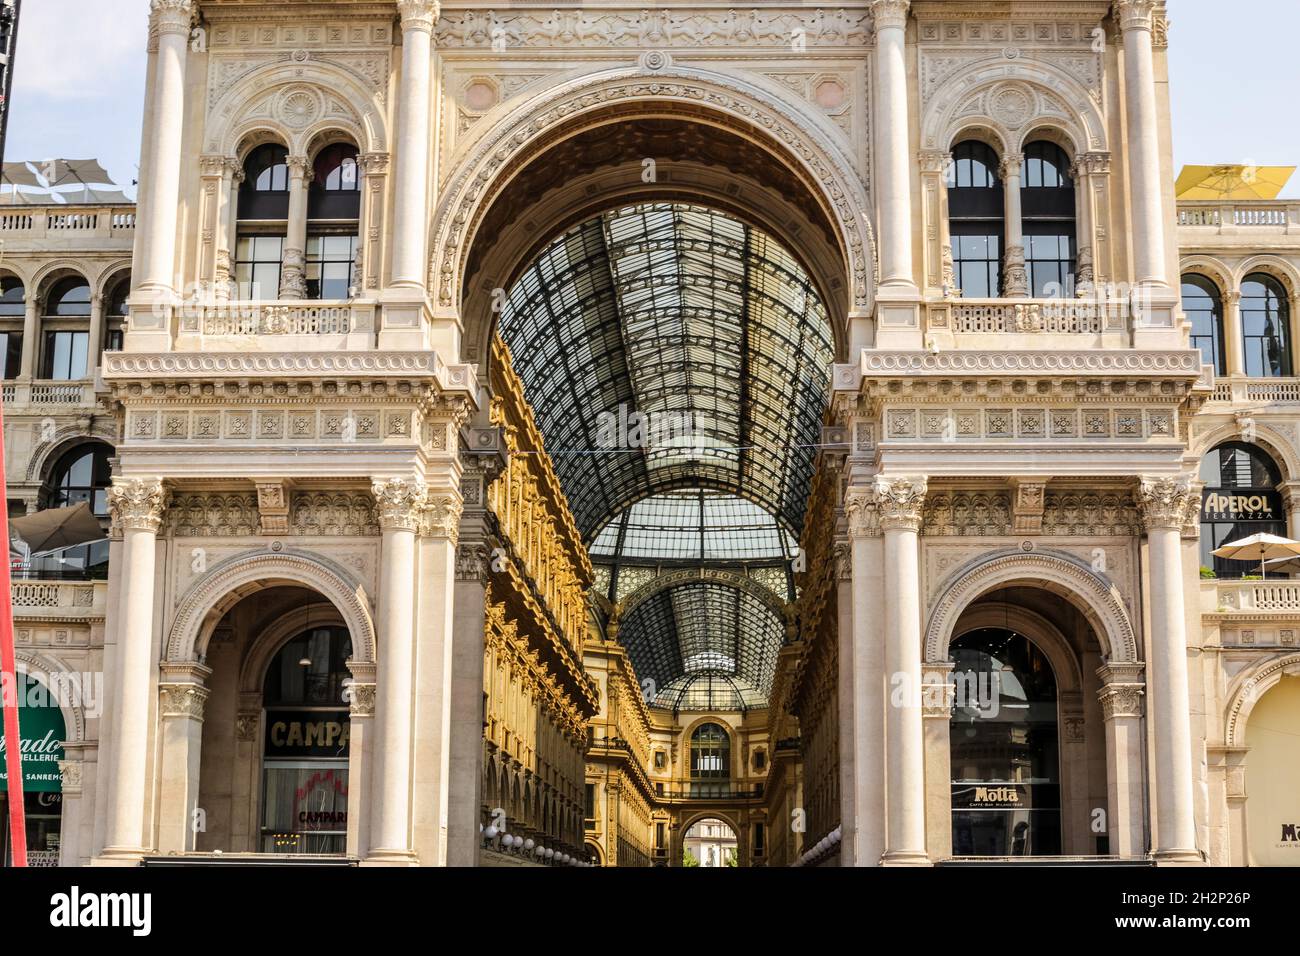 Milano, Italia - 13 giugno 2017: Ingresso della Galleria Vittorio Emanuele nel centro città Foto Stock